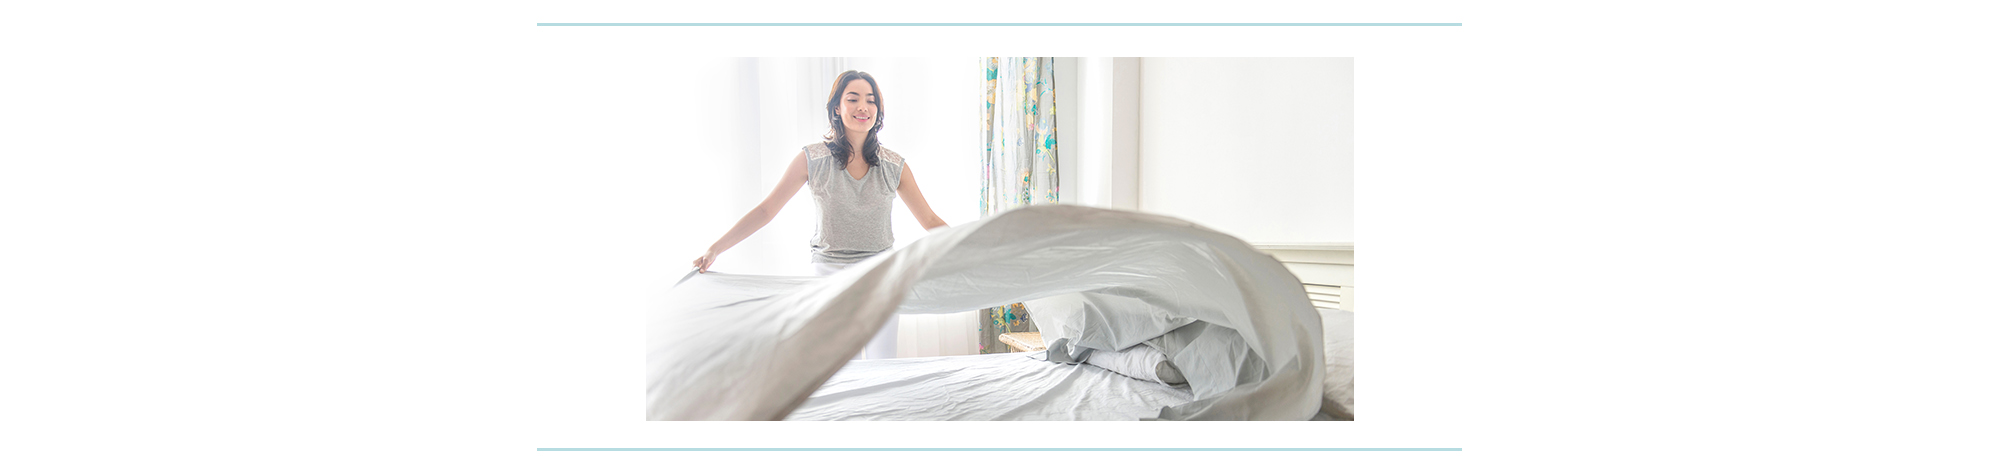 Une femme met un drap propre sur un lit.